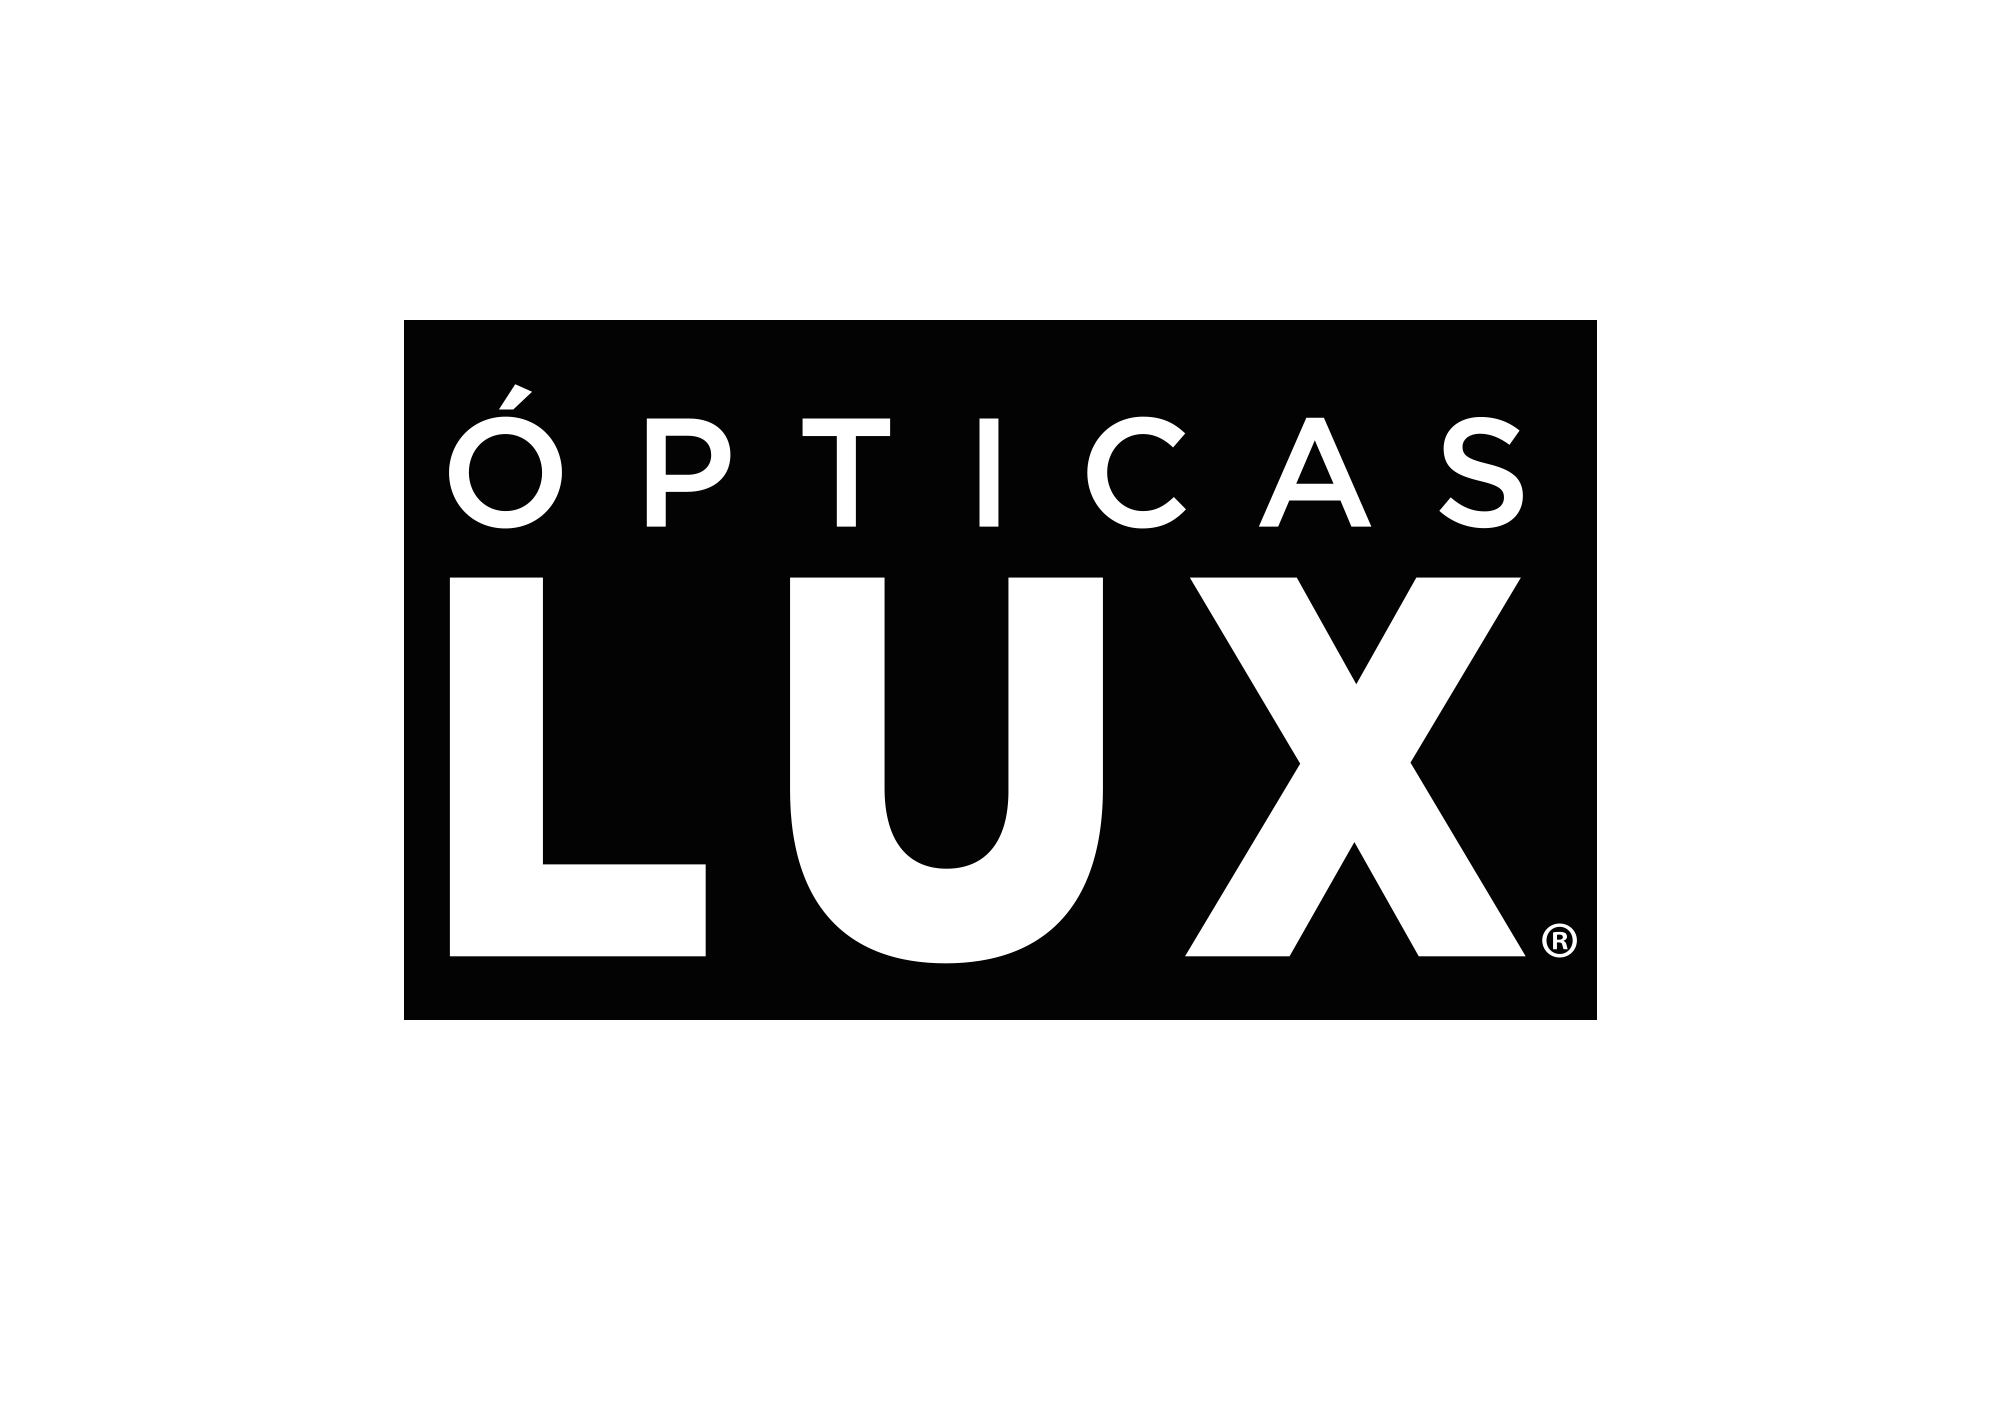 Opticas Lux